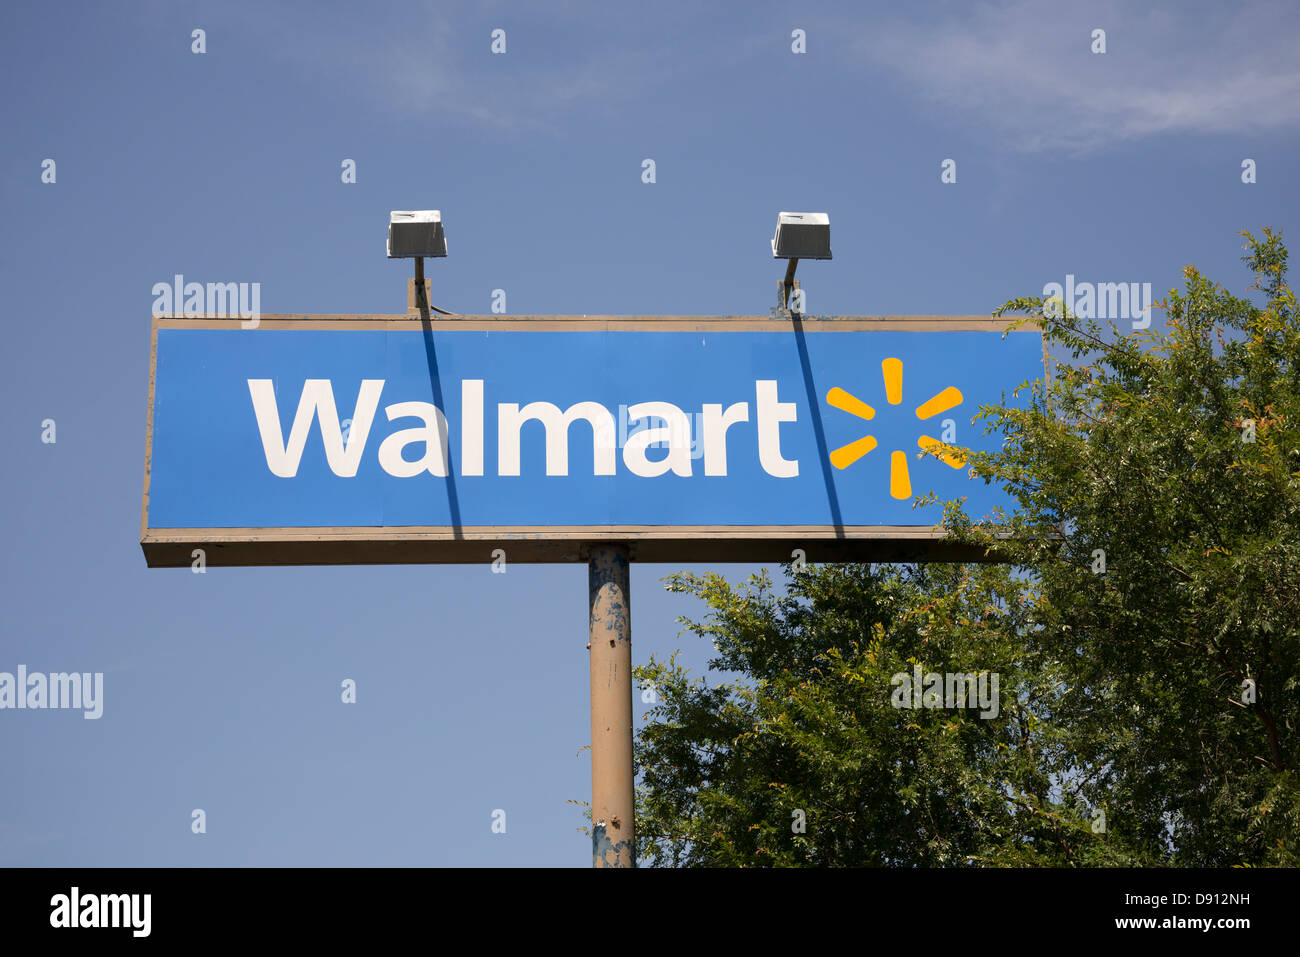 Wal Mart Store and signs, Lake City, Florida. Stock Photo